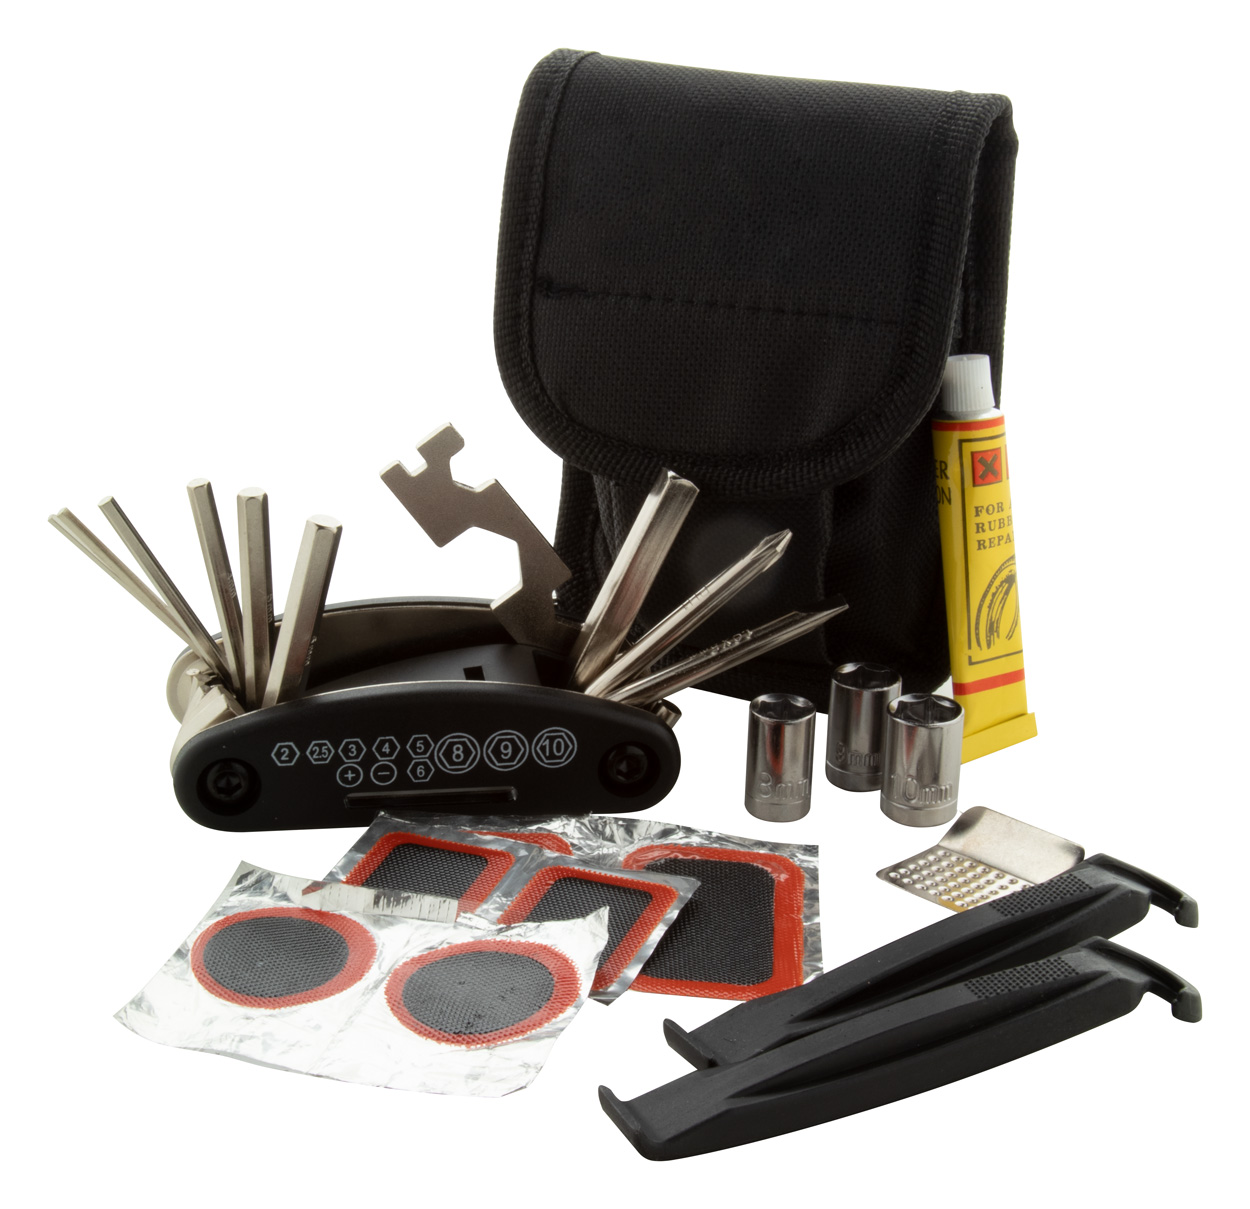 Lance bike tool kit - black